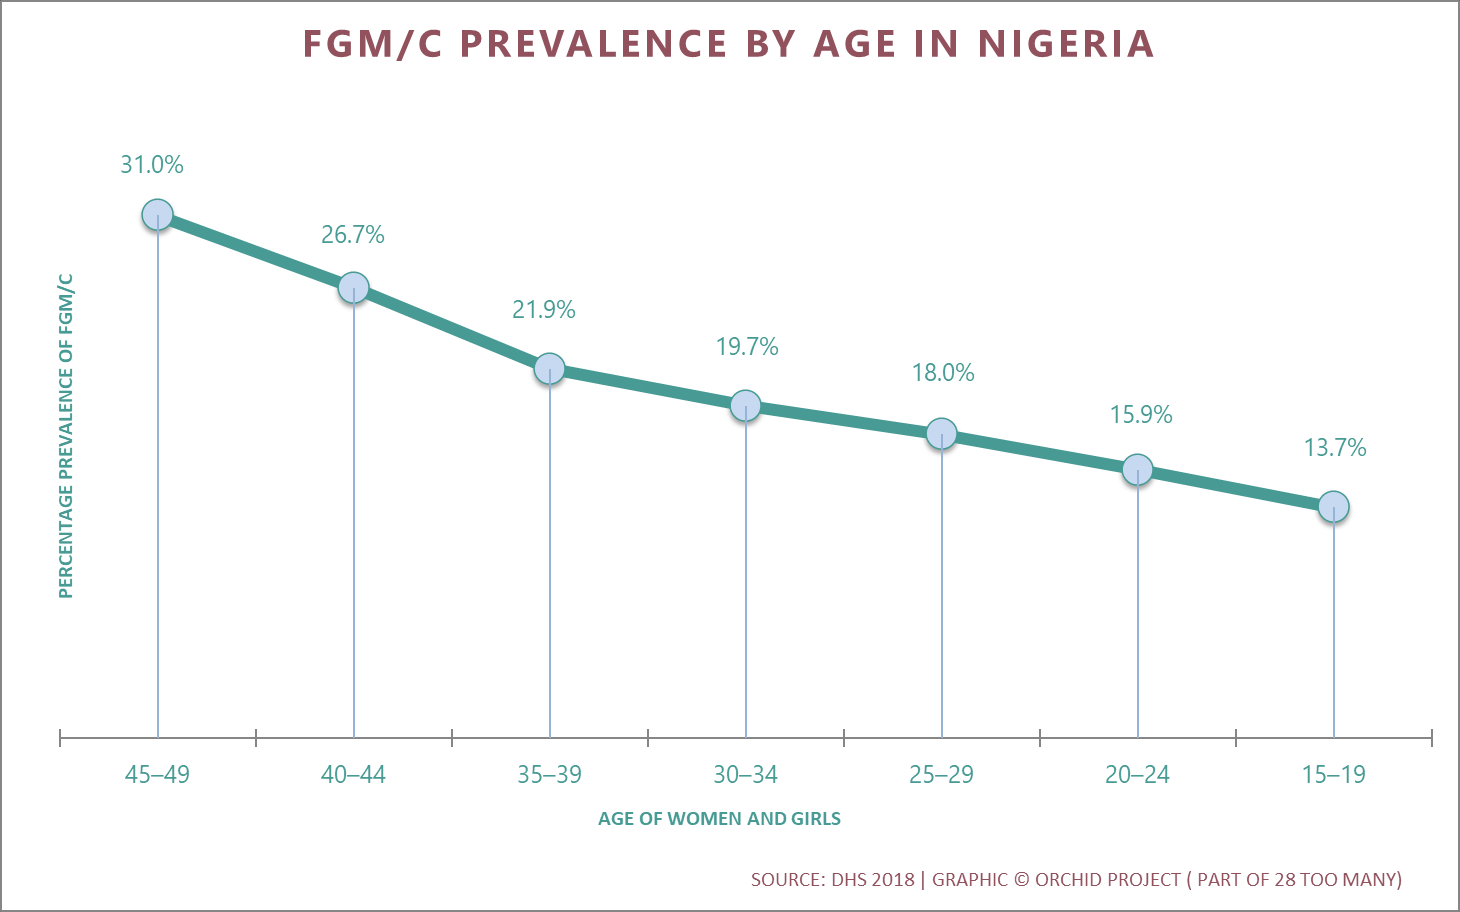 Trends in FGM/C Prevalence in Nigeria